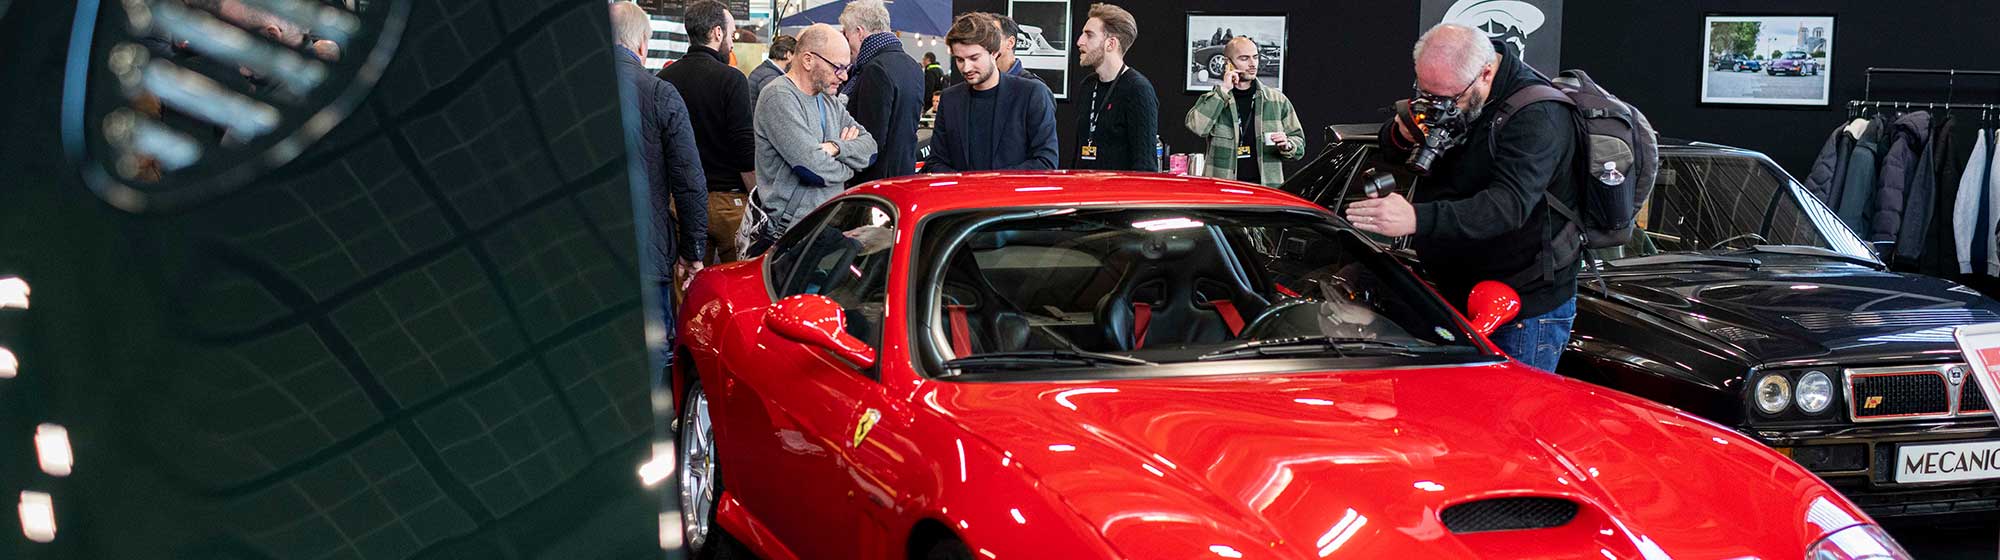 Groupe d'homme admirant une voiture rouge sur un stand de Rétromobile